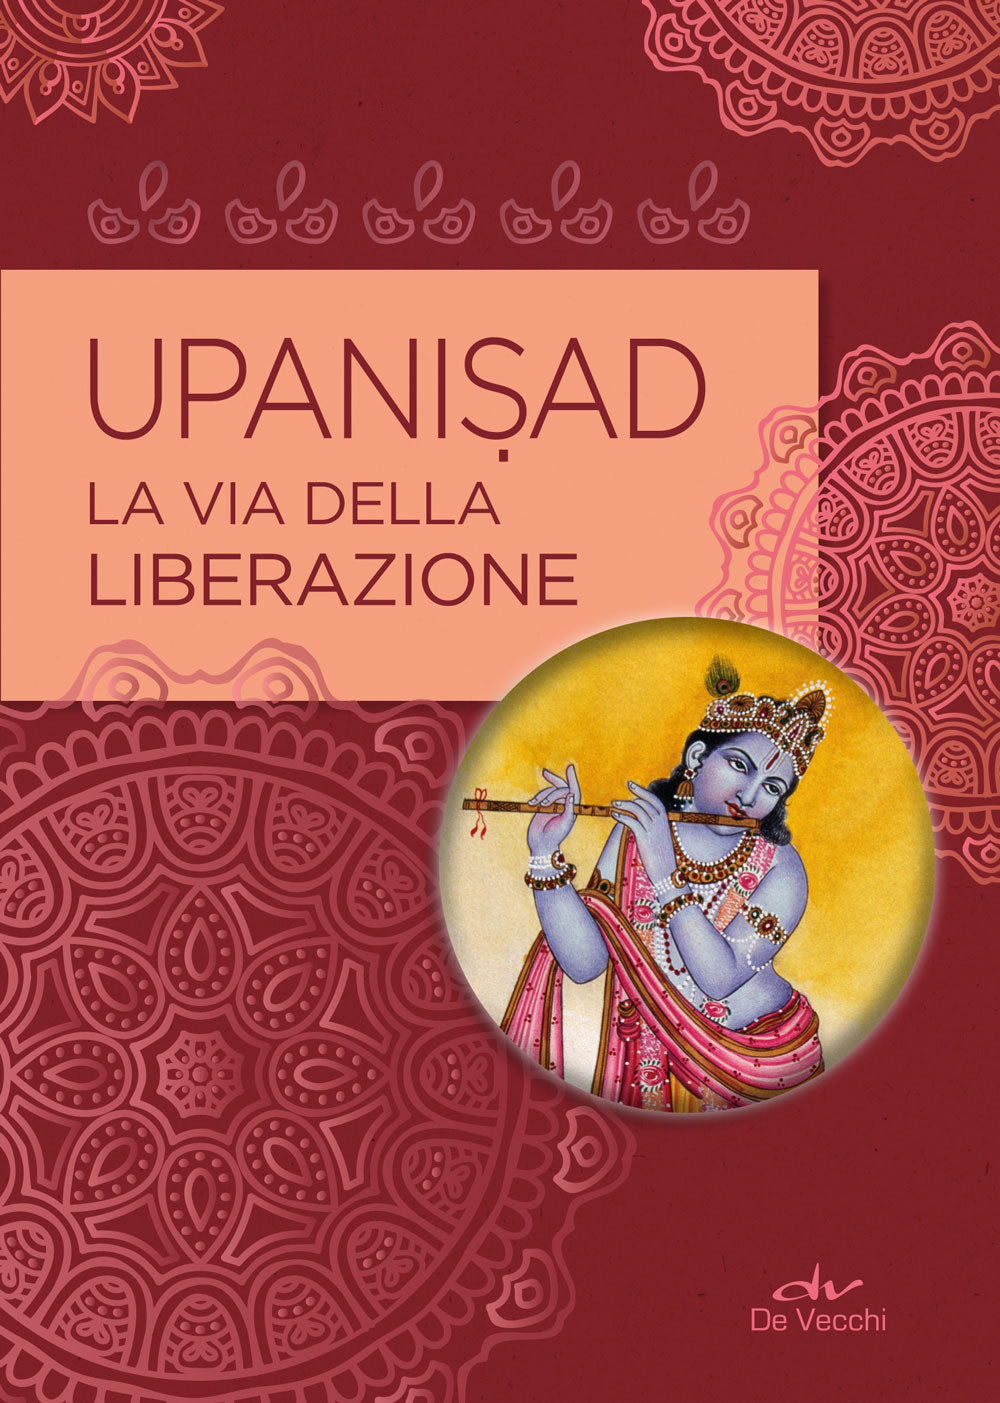 Upanisad::La via della liberazione